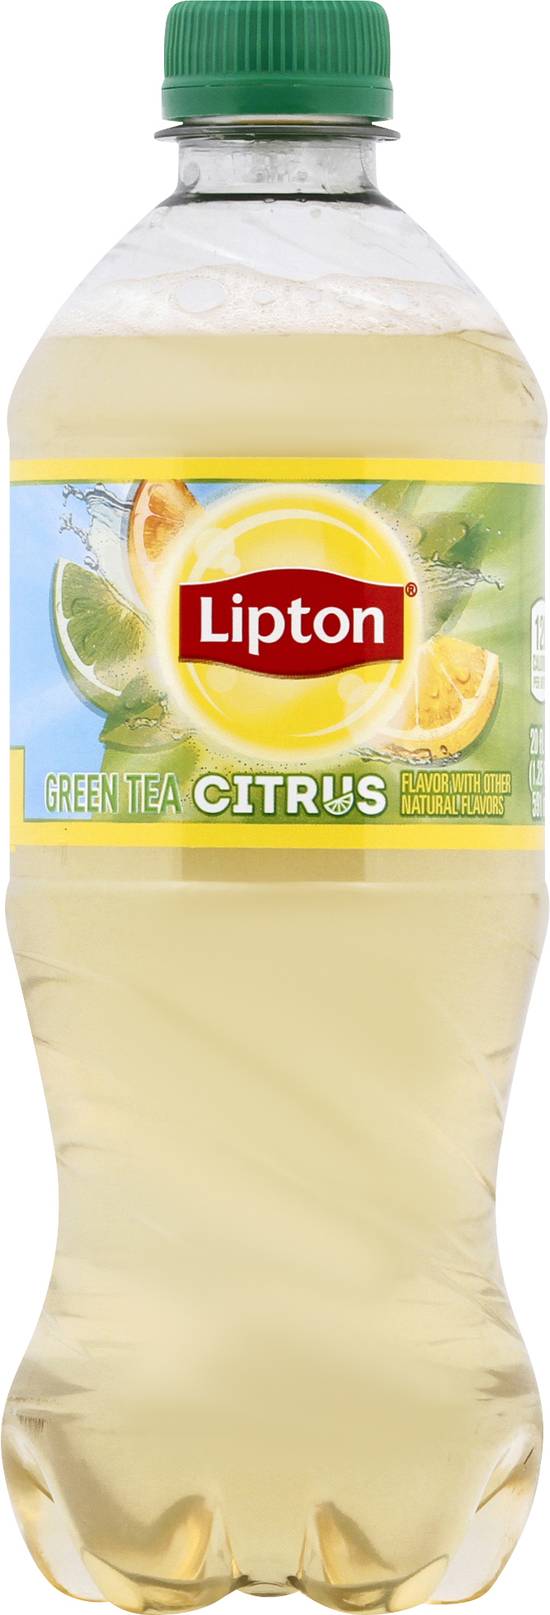 Lipton Citrus Green Tea (20 fl oz)